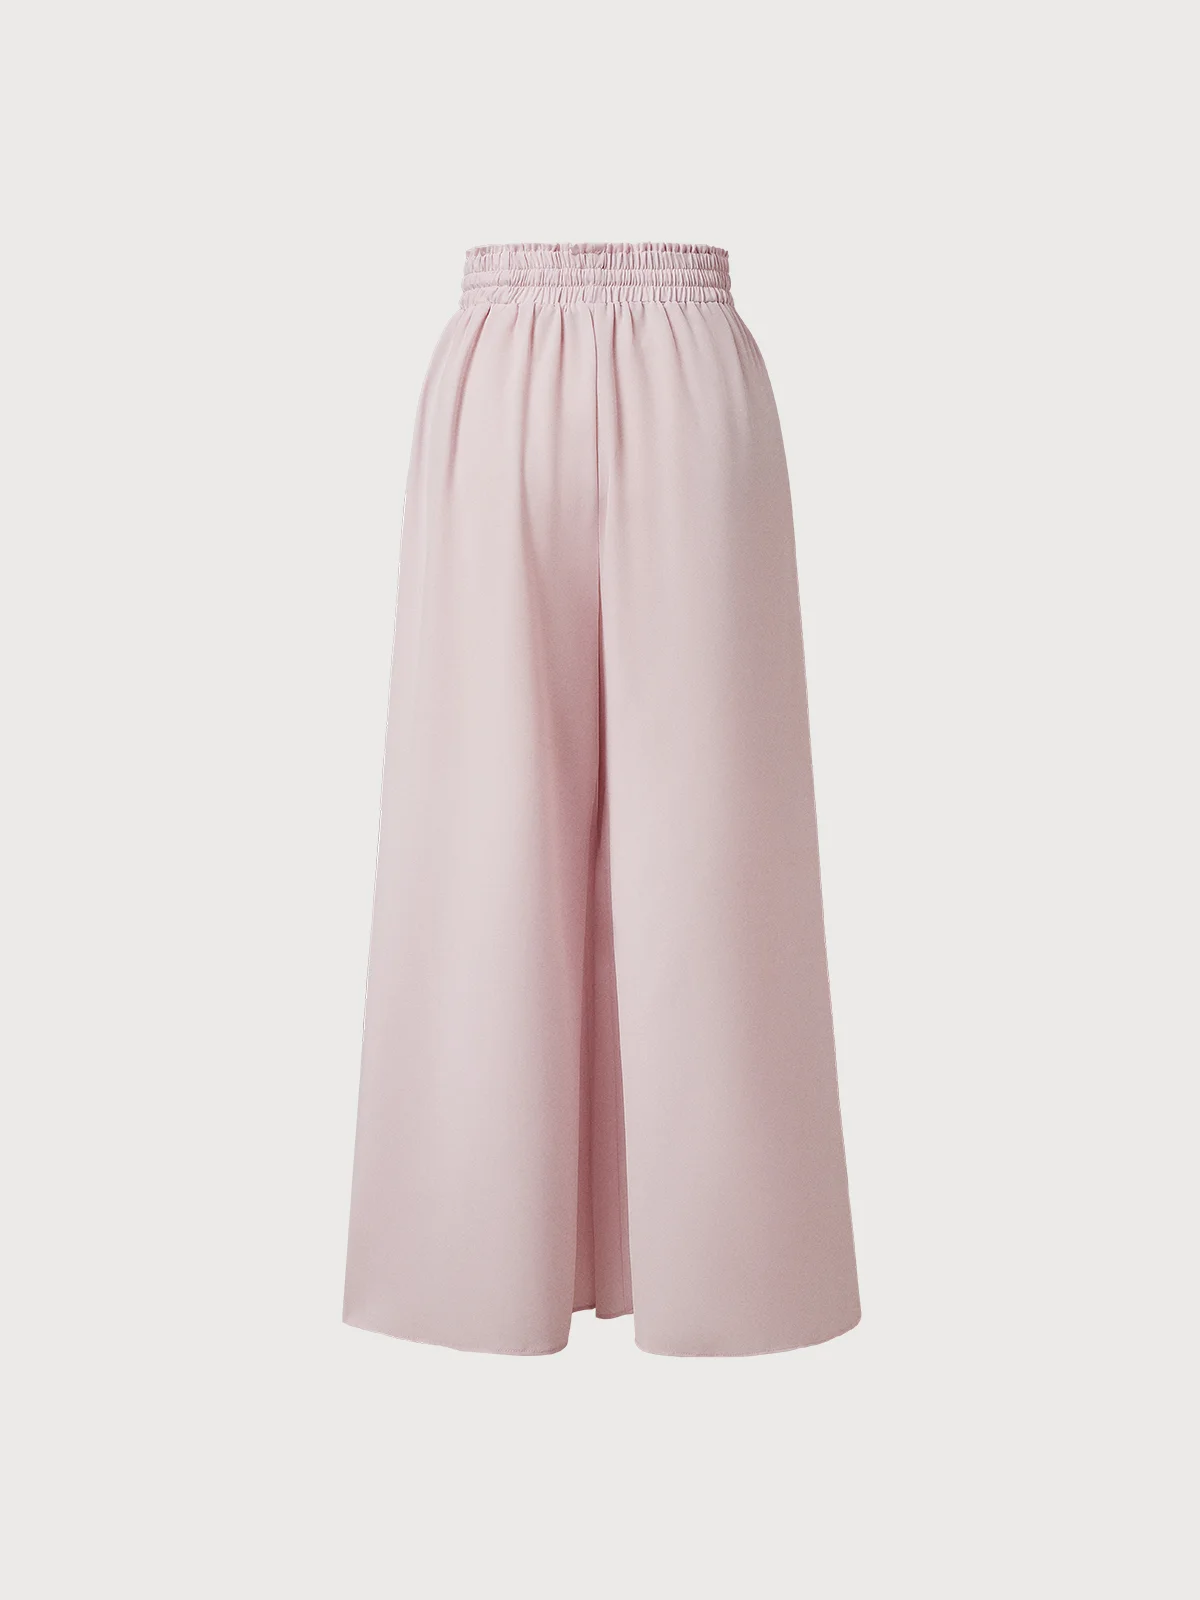 Pantalons Plain Toutes Les Saisons Décontracté Polyester Micro-élasticité Quotidien Standard Long Régulier pour Femmes